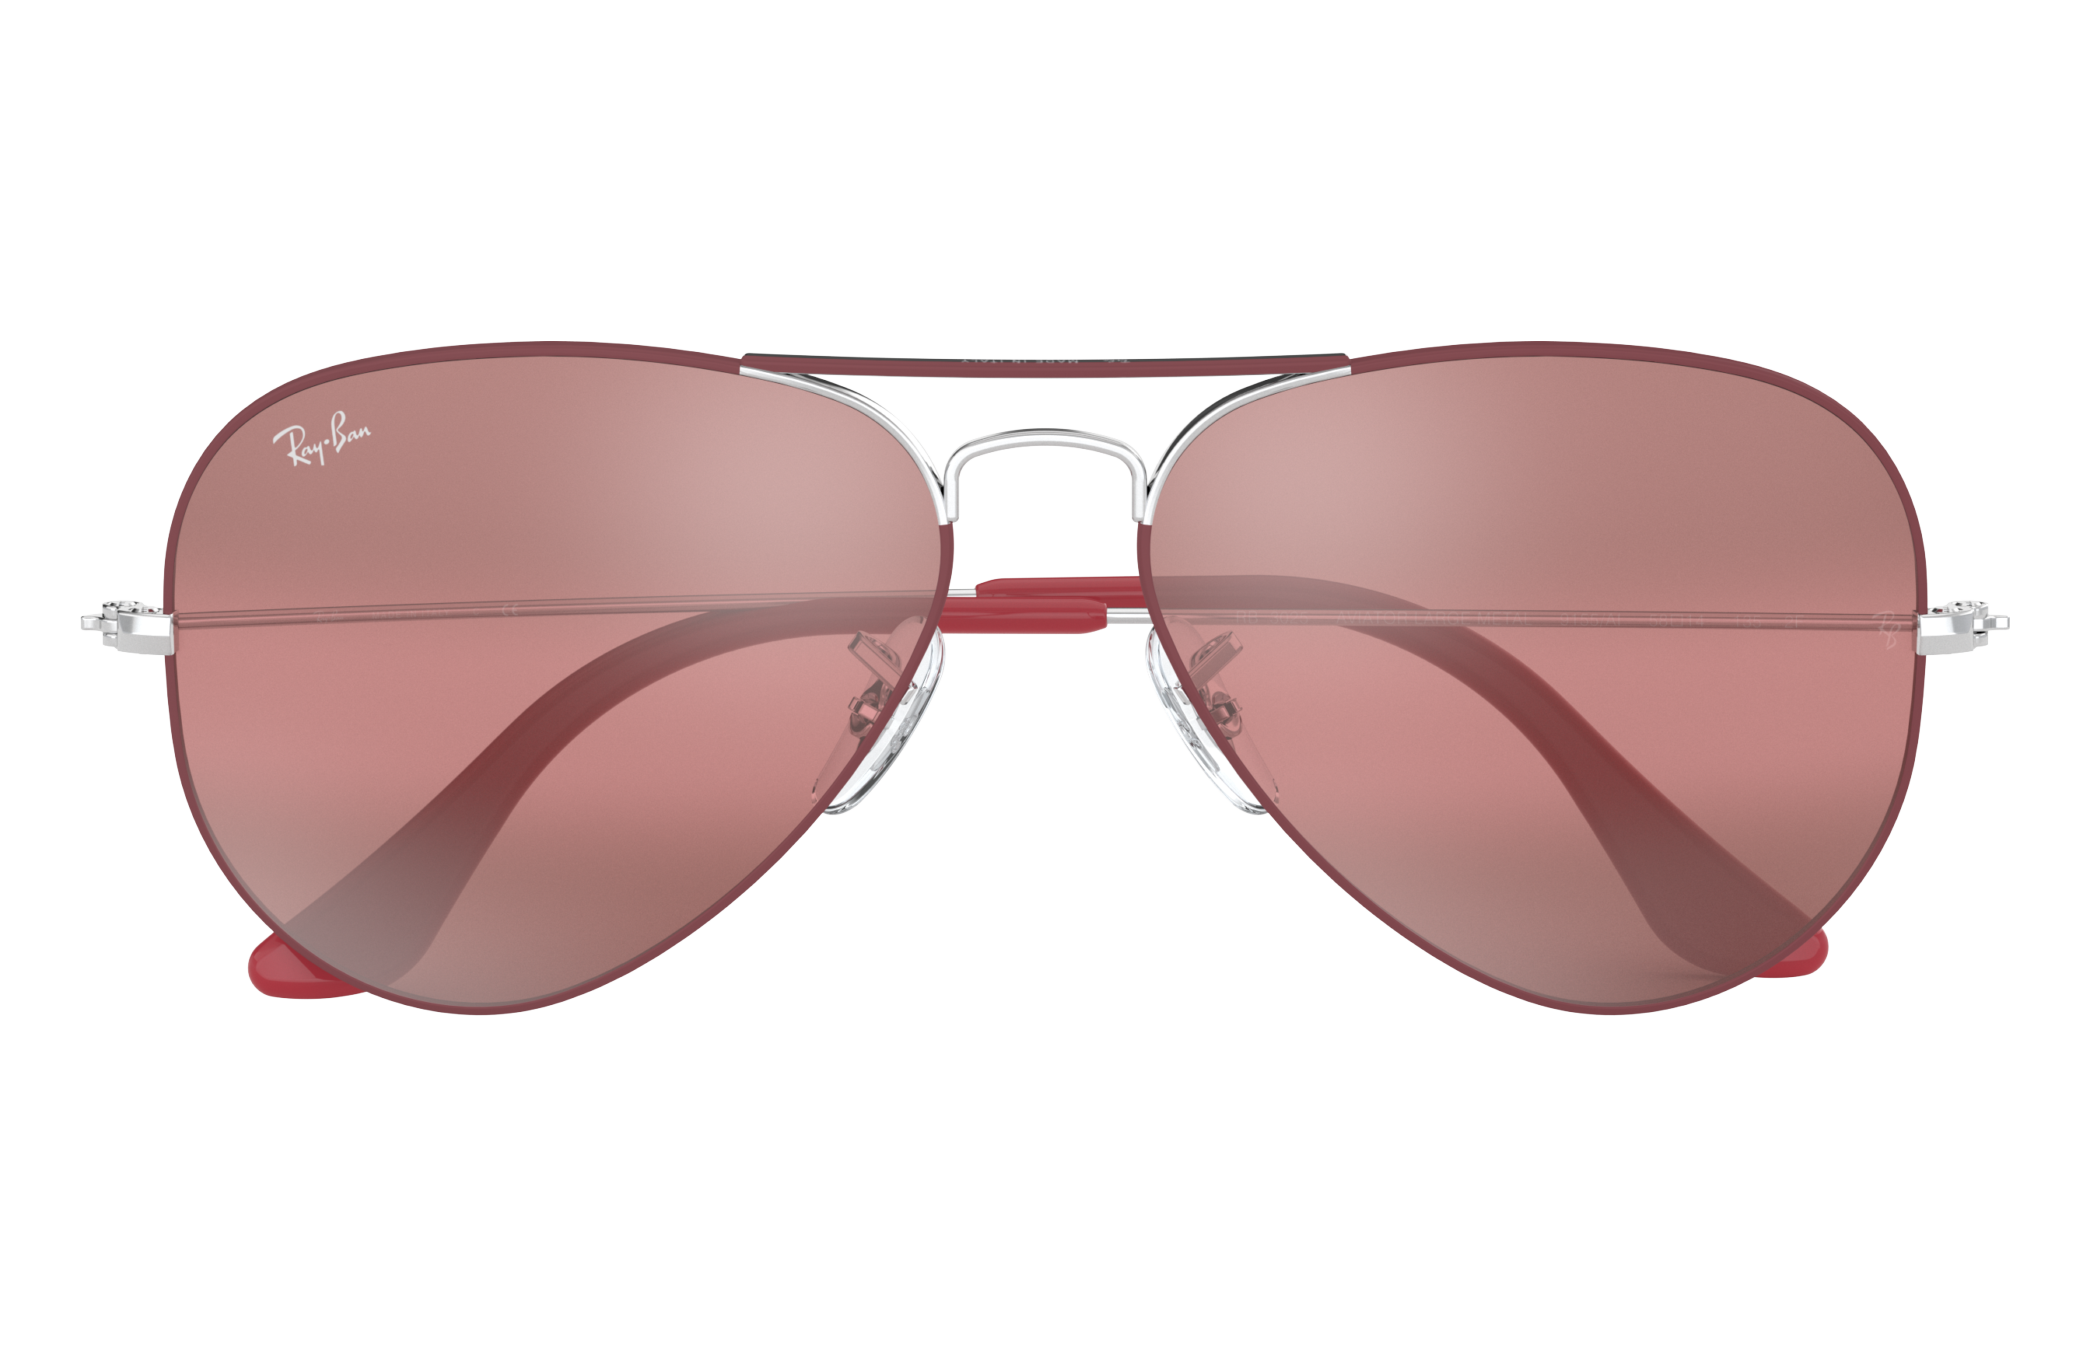 mirrored aviator sunglasses ray ban